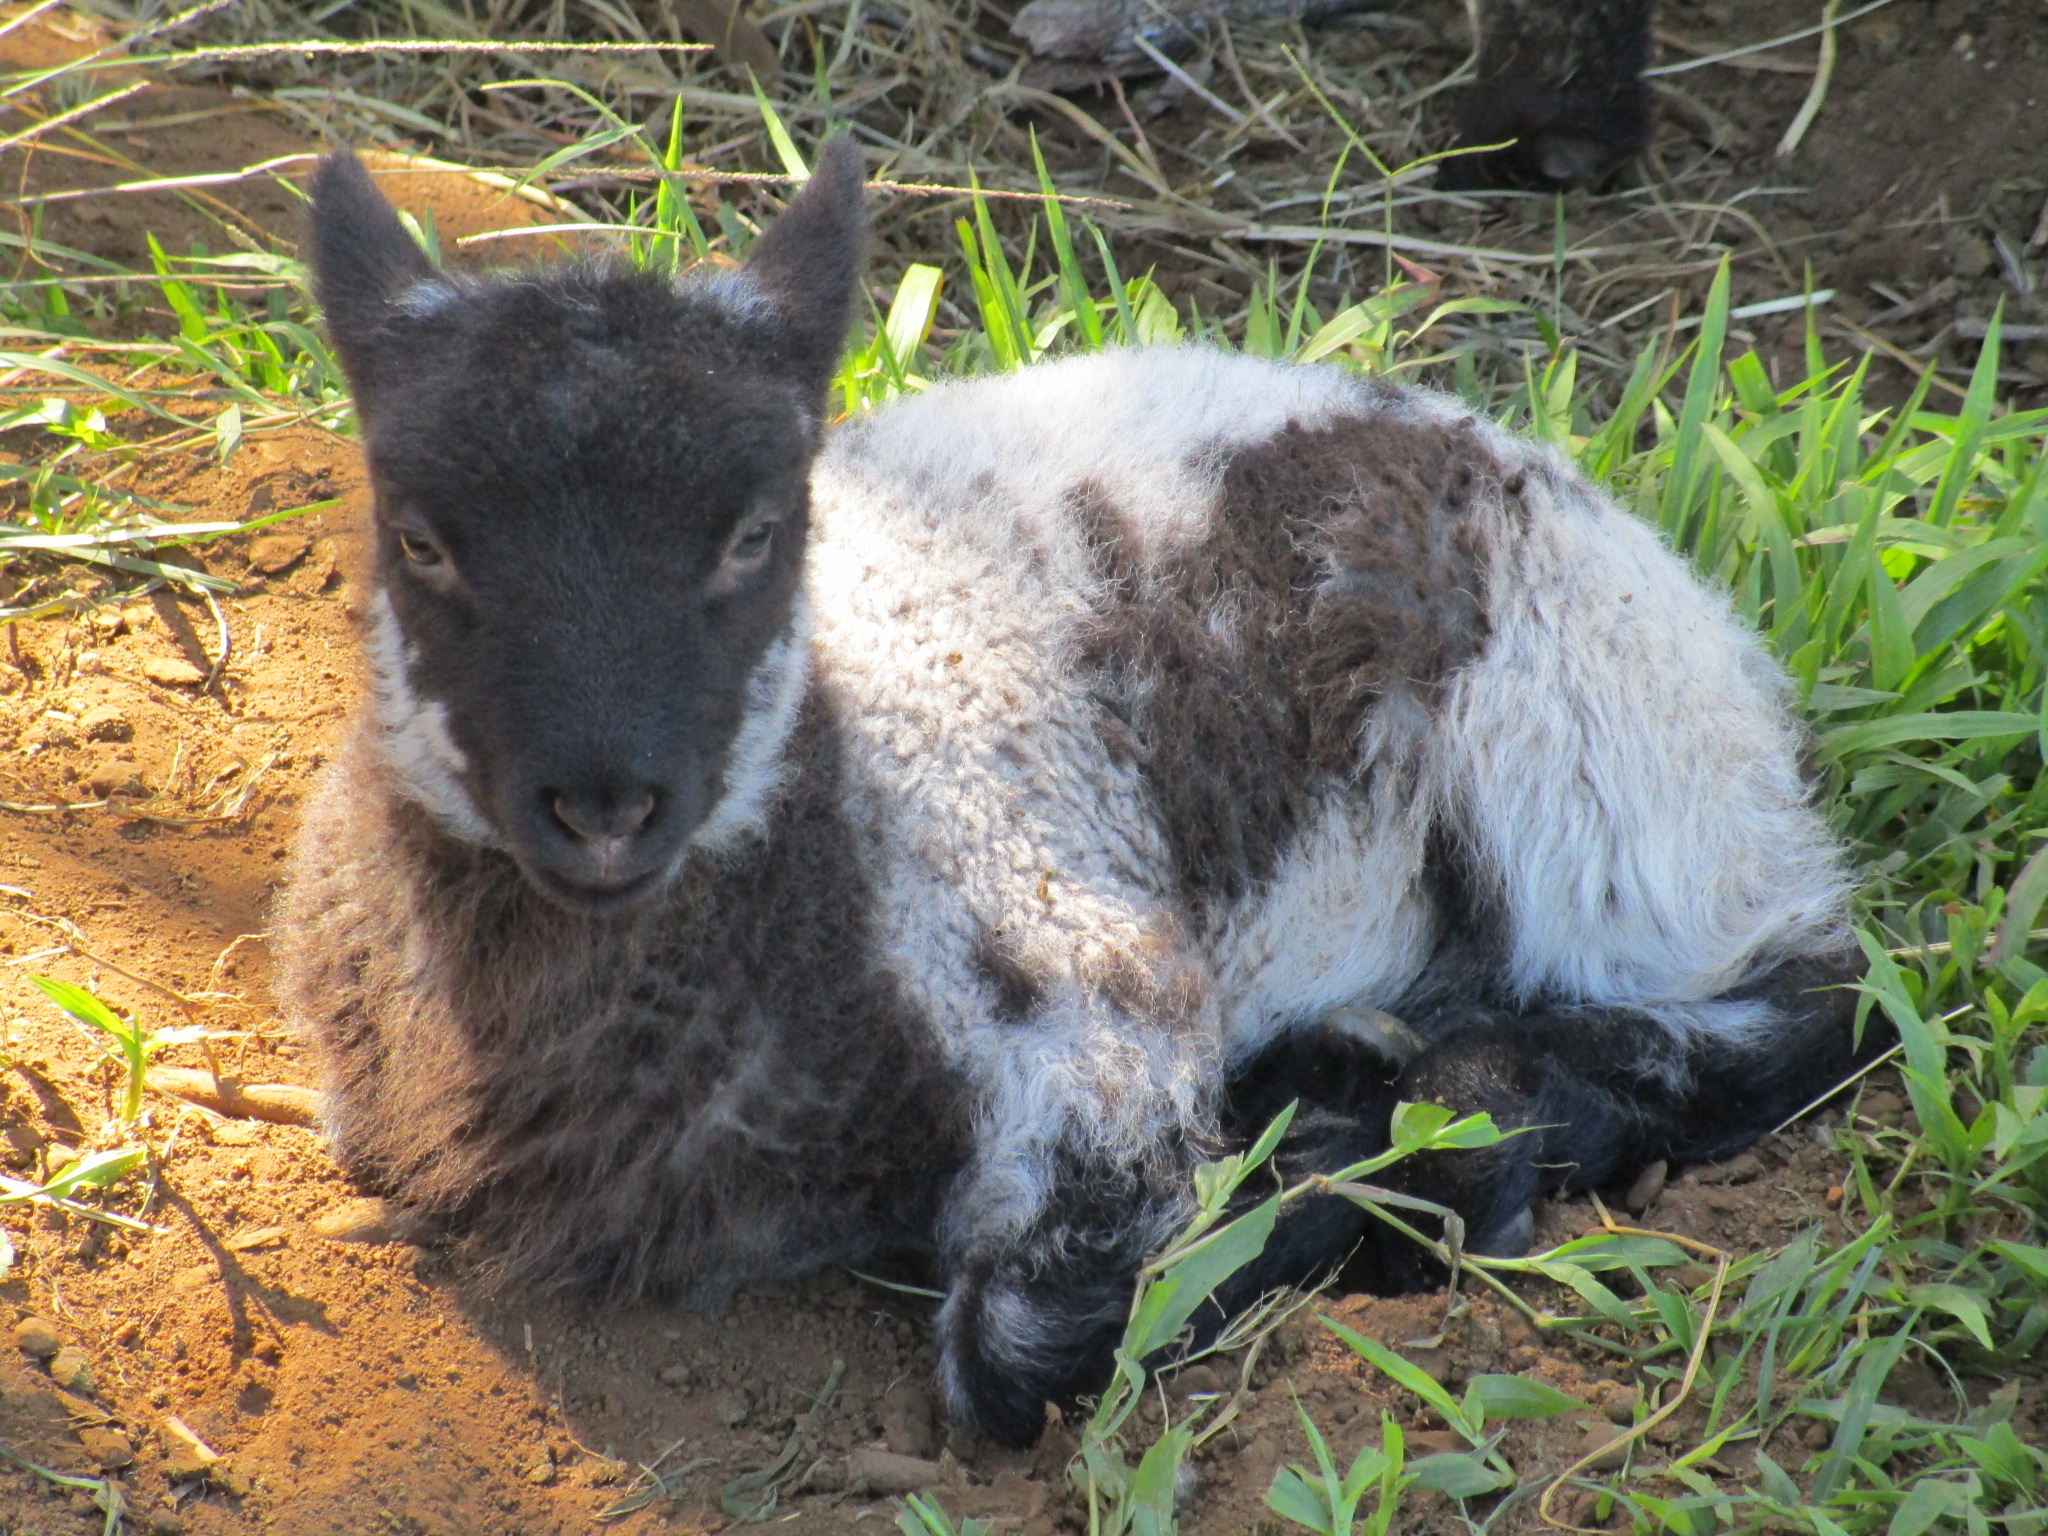 Ewe lamb at 10 days old